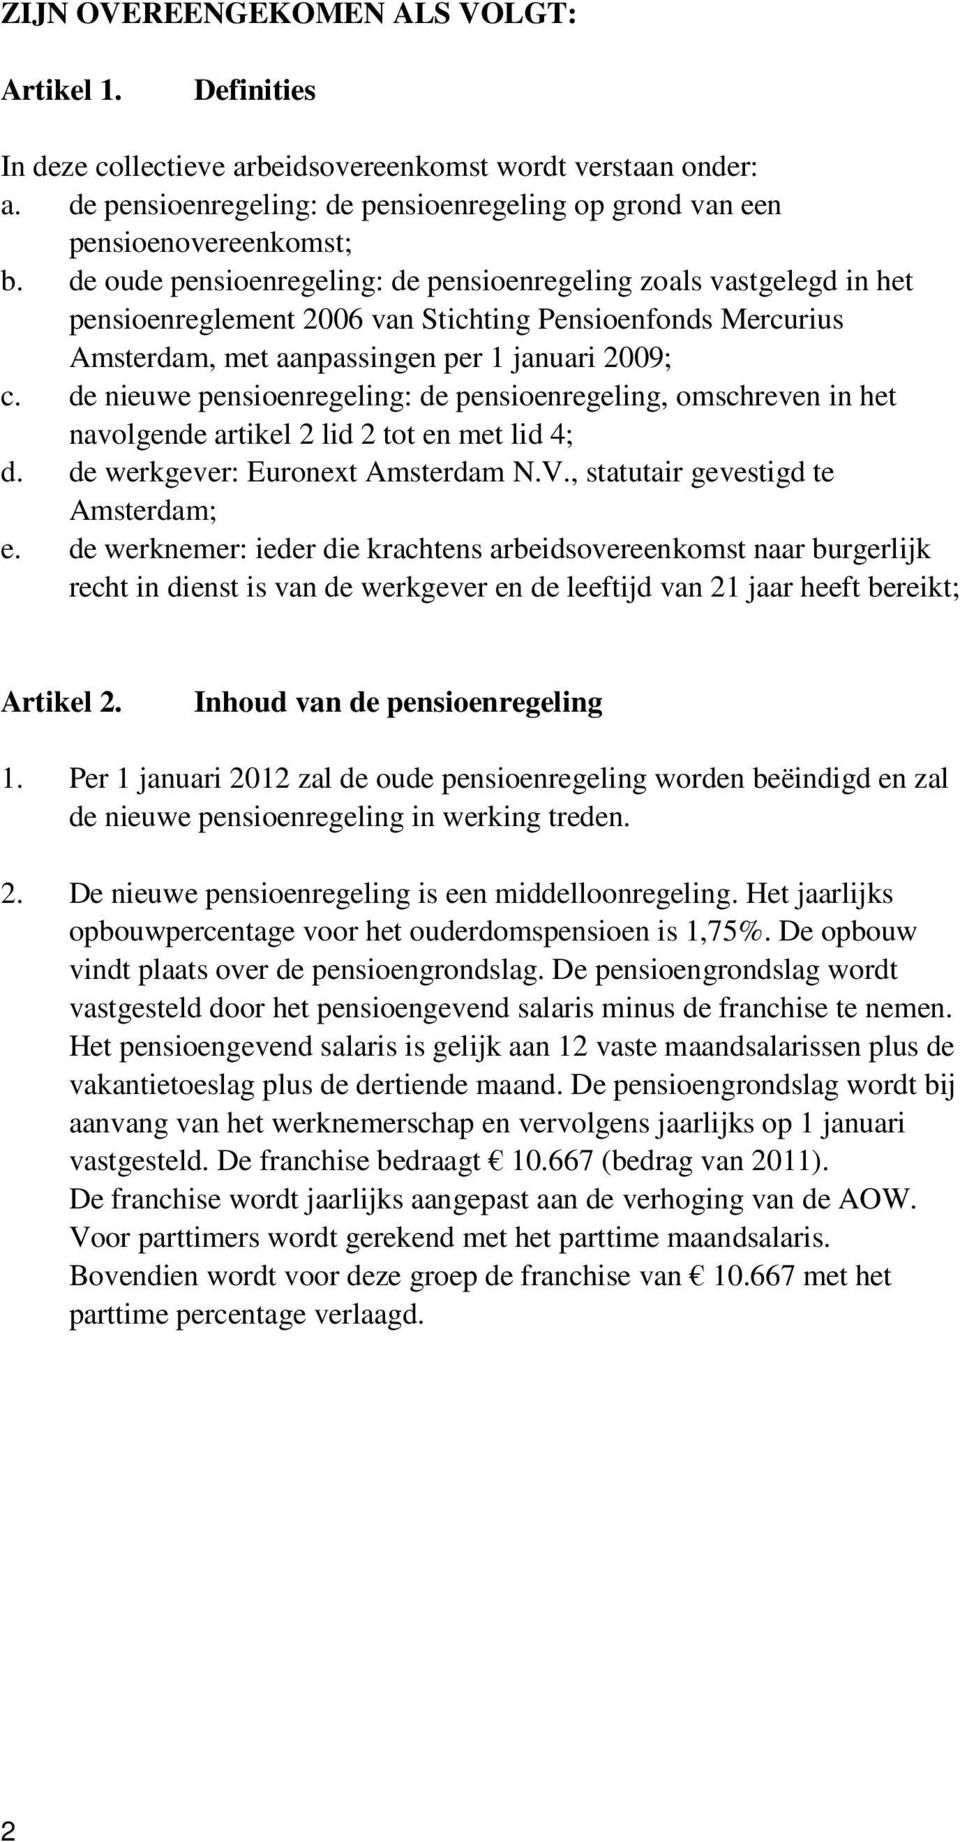 de nieuwe pensioenregeling: de pensioenregeling, omschreven in het navolgende artikel 2 lid 2 tot en met lid 4; d. de werkgever: Euronext Amsterdam N.V., statutair gevestigd te Amsterdam; e.